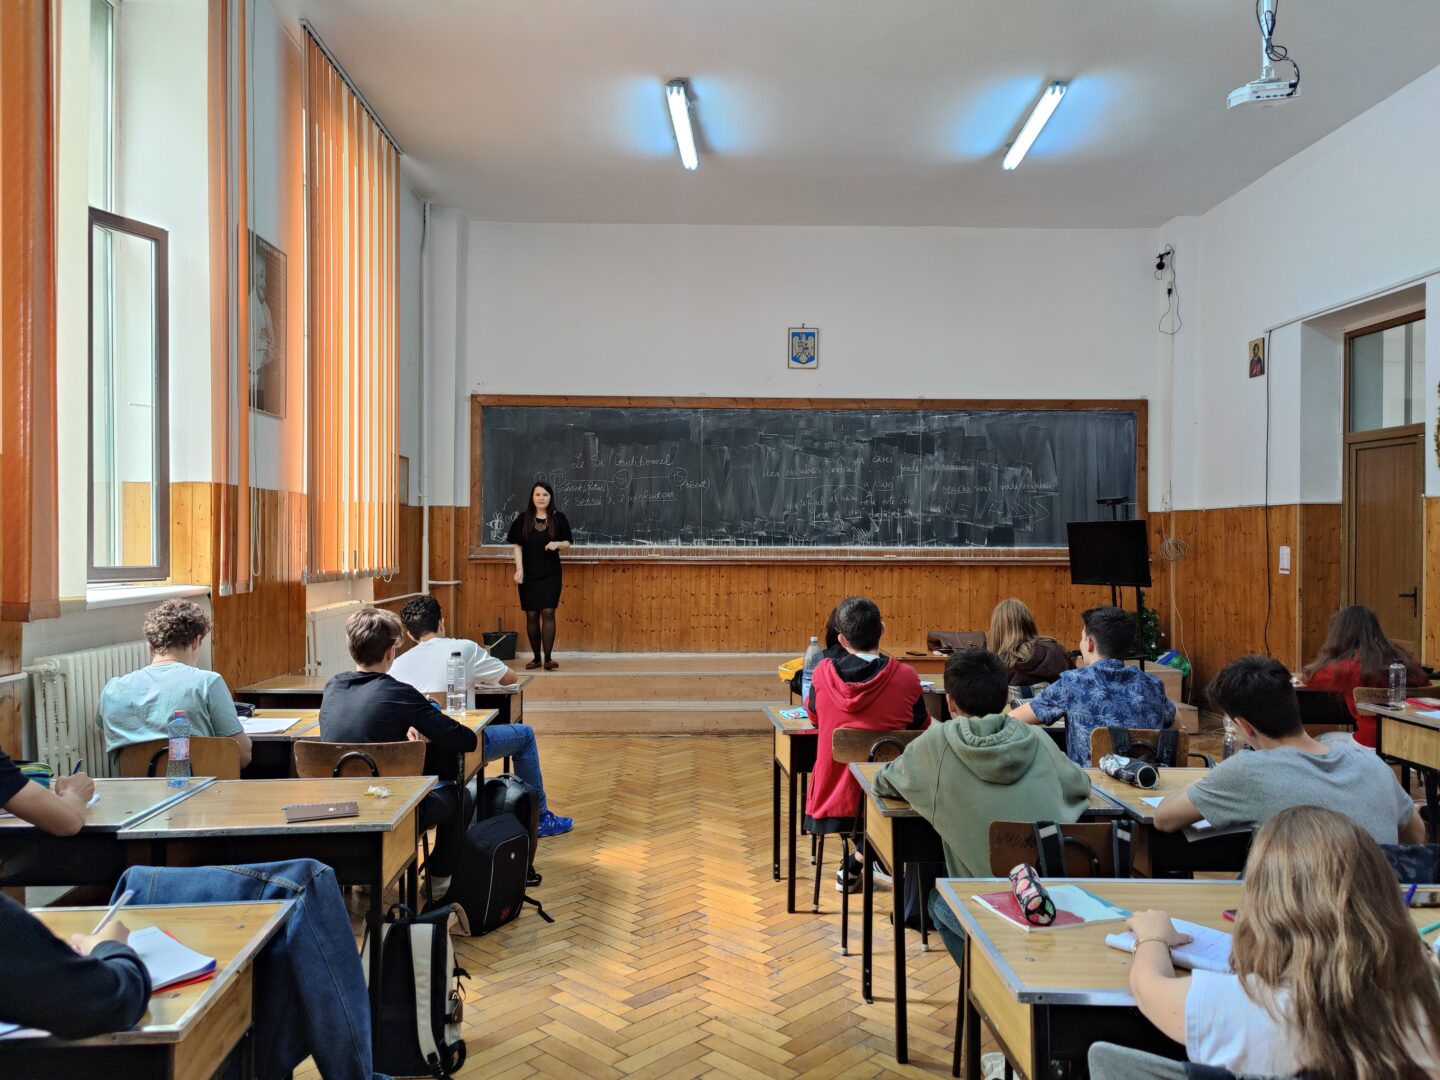 O profesoară din București explică de ce nu a intrat în grevă: ”Mi se pare o grevă imorală, o grevă șantaj, i-aș spune”